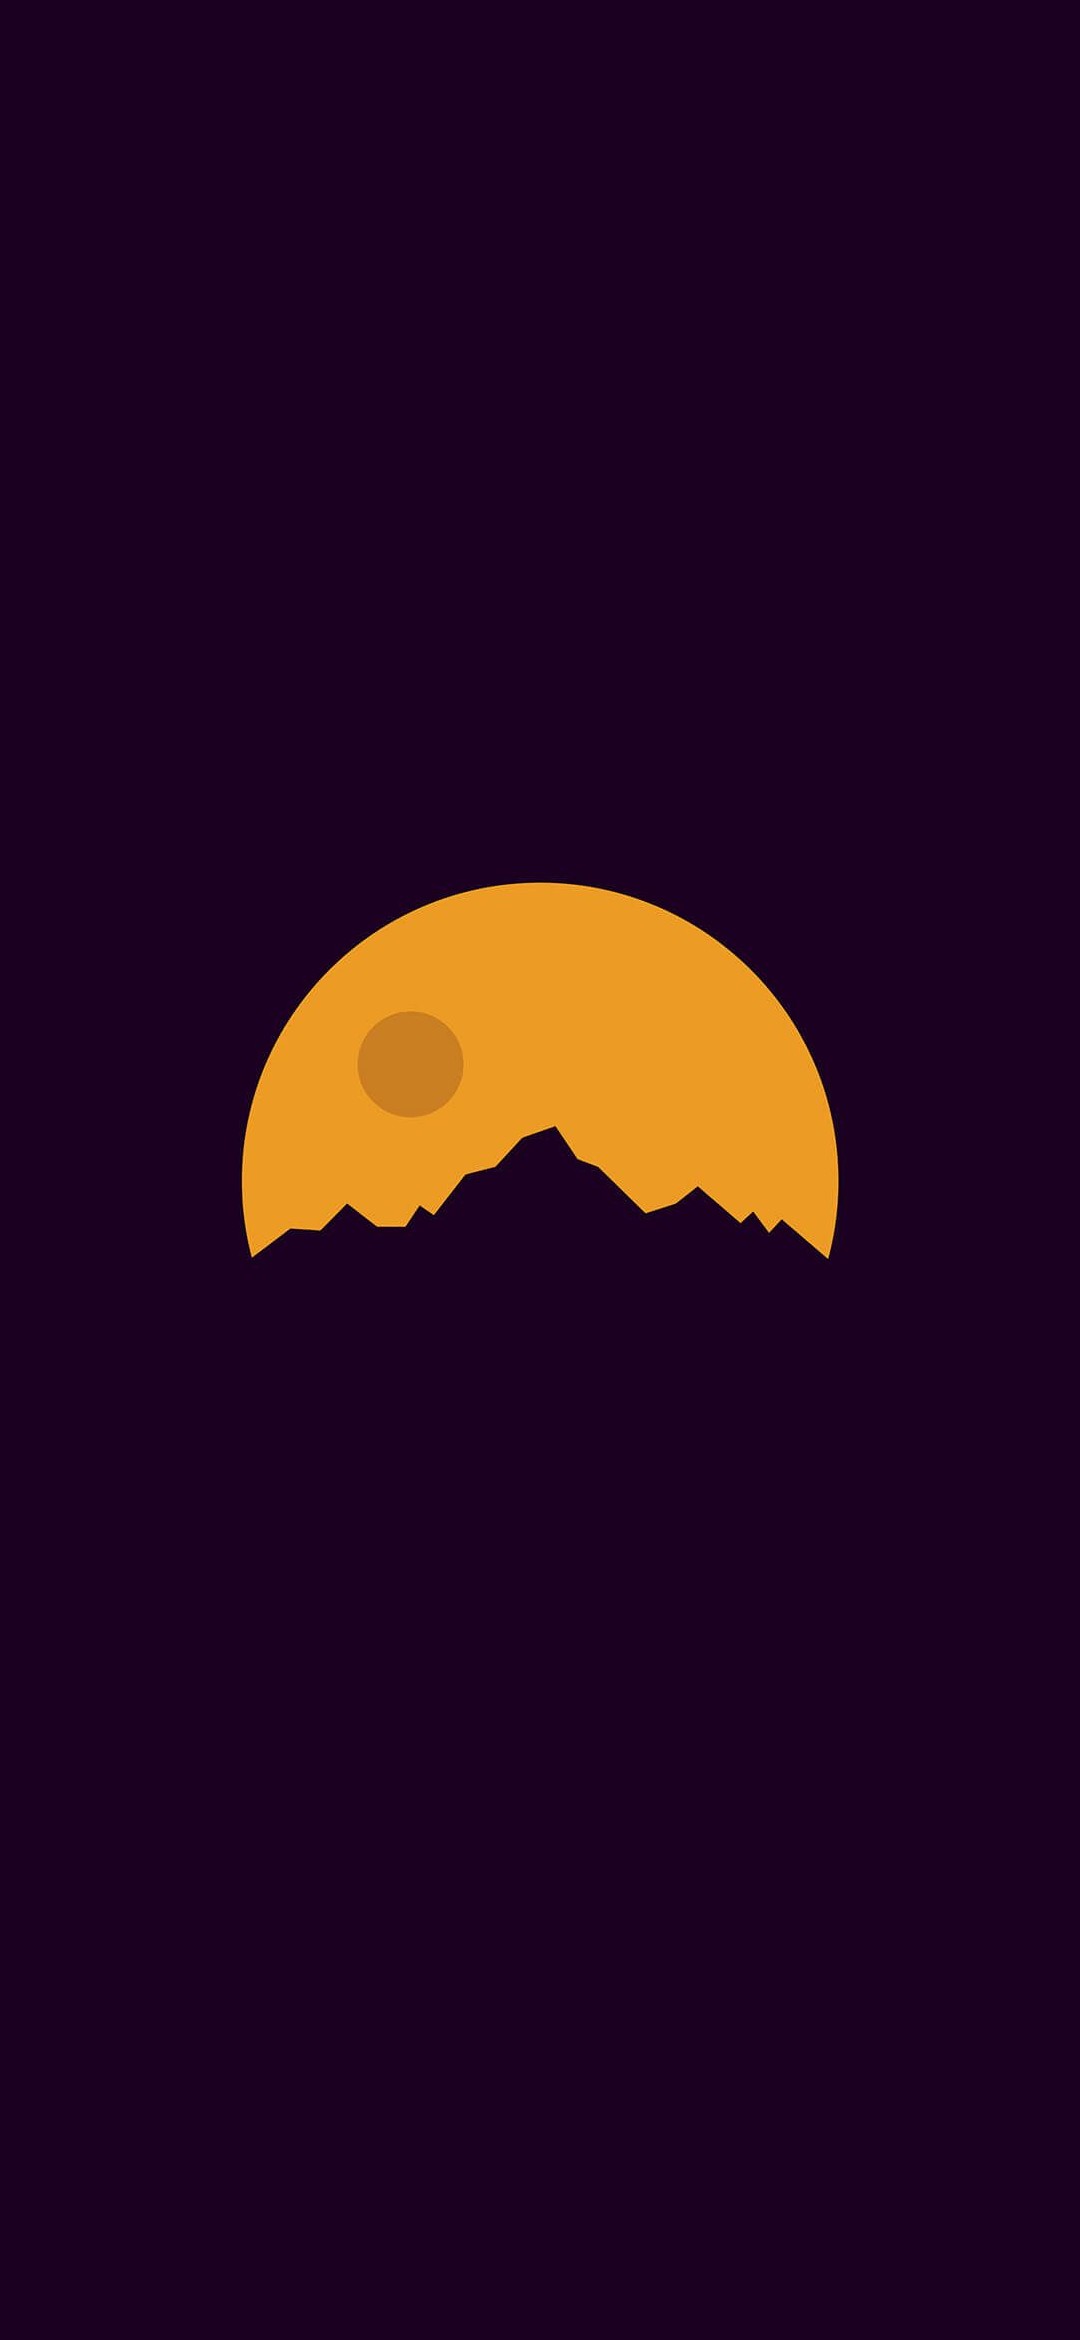 シンプルな紫の山と黄色い満月のイラスト Redmi 9t Android スマホ壁紙 待ち受け スマラン